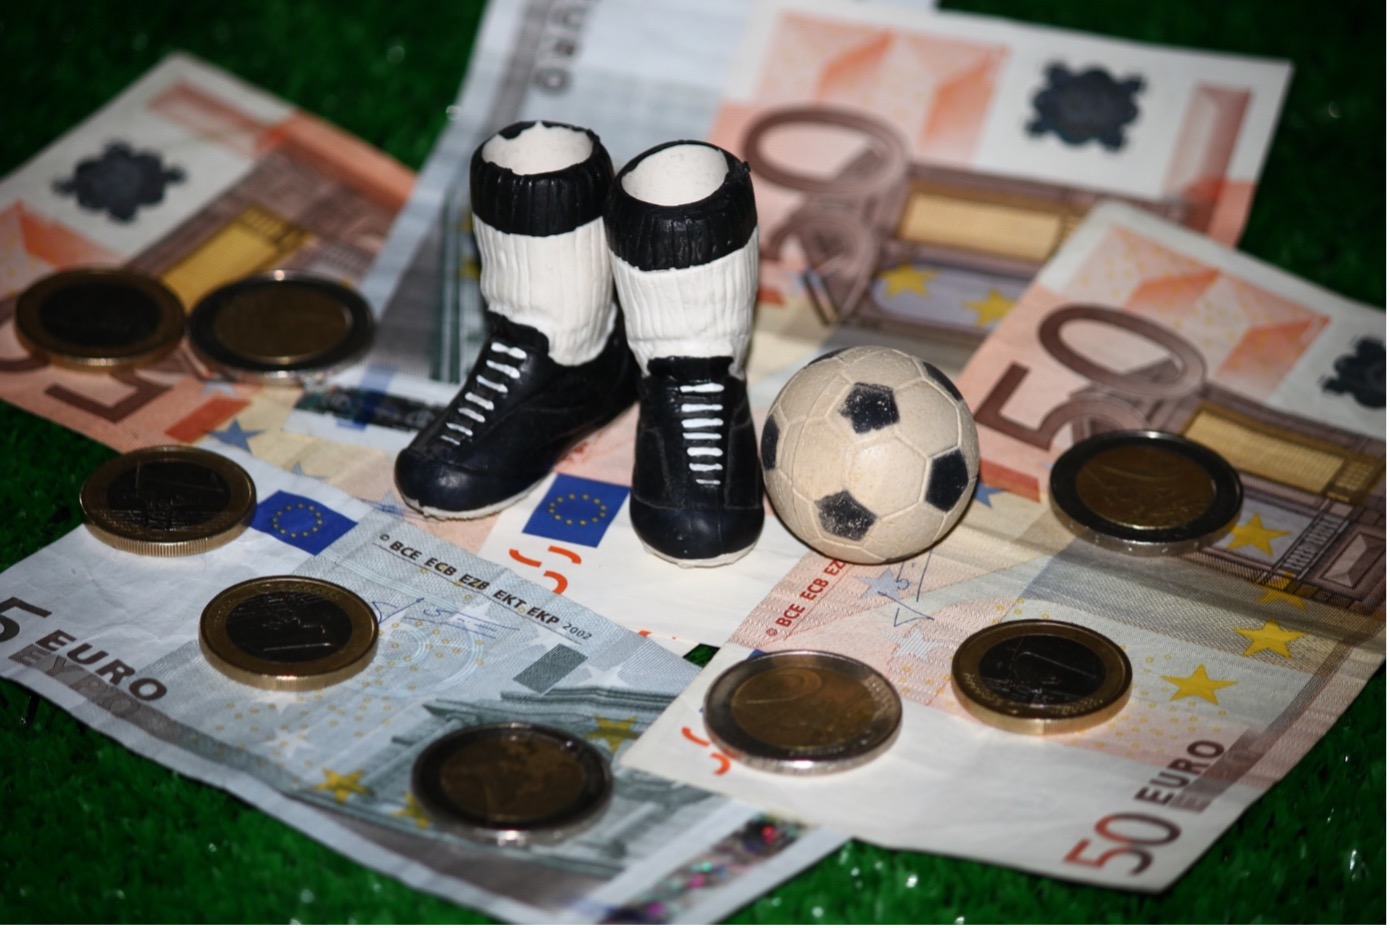 Des FC Bayerns Katarliebe: Eine Beziehung zwischen Geld und Moral